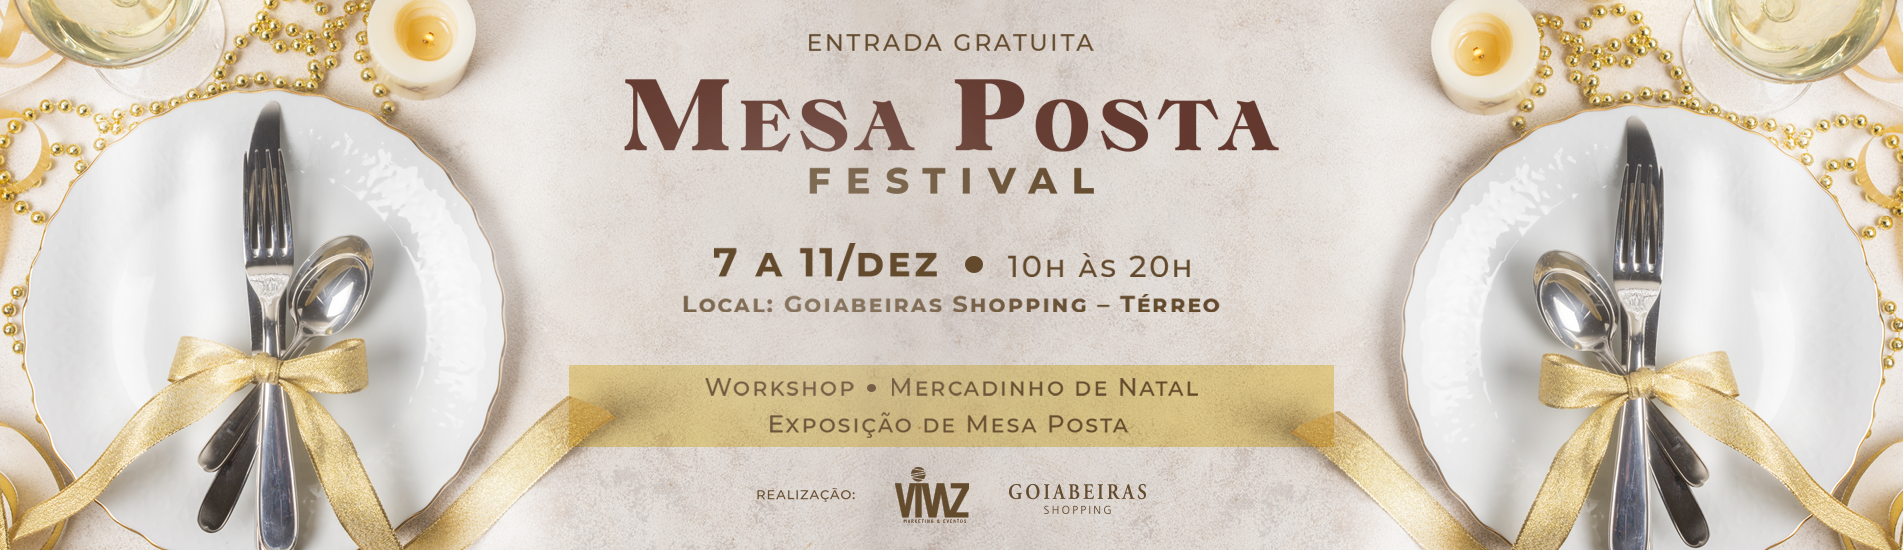 Festival Mesa Posta